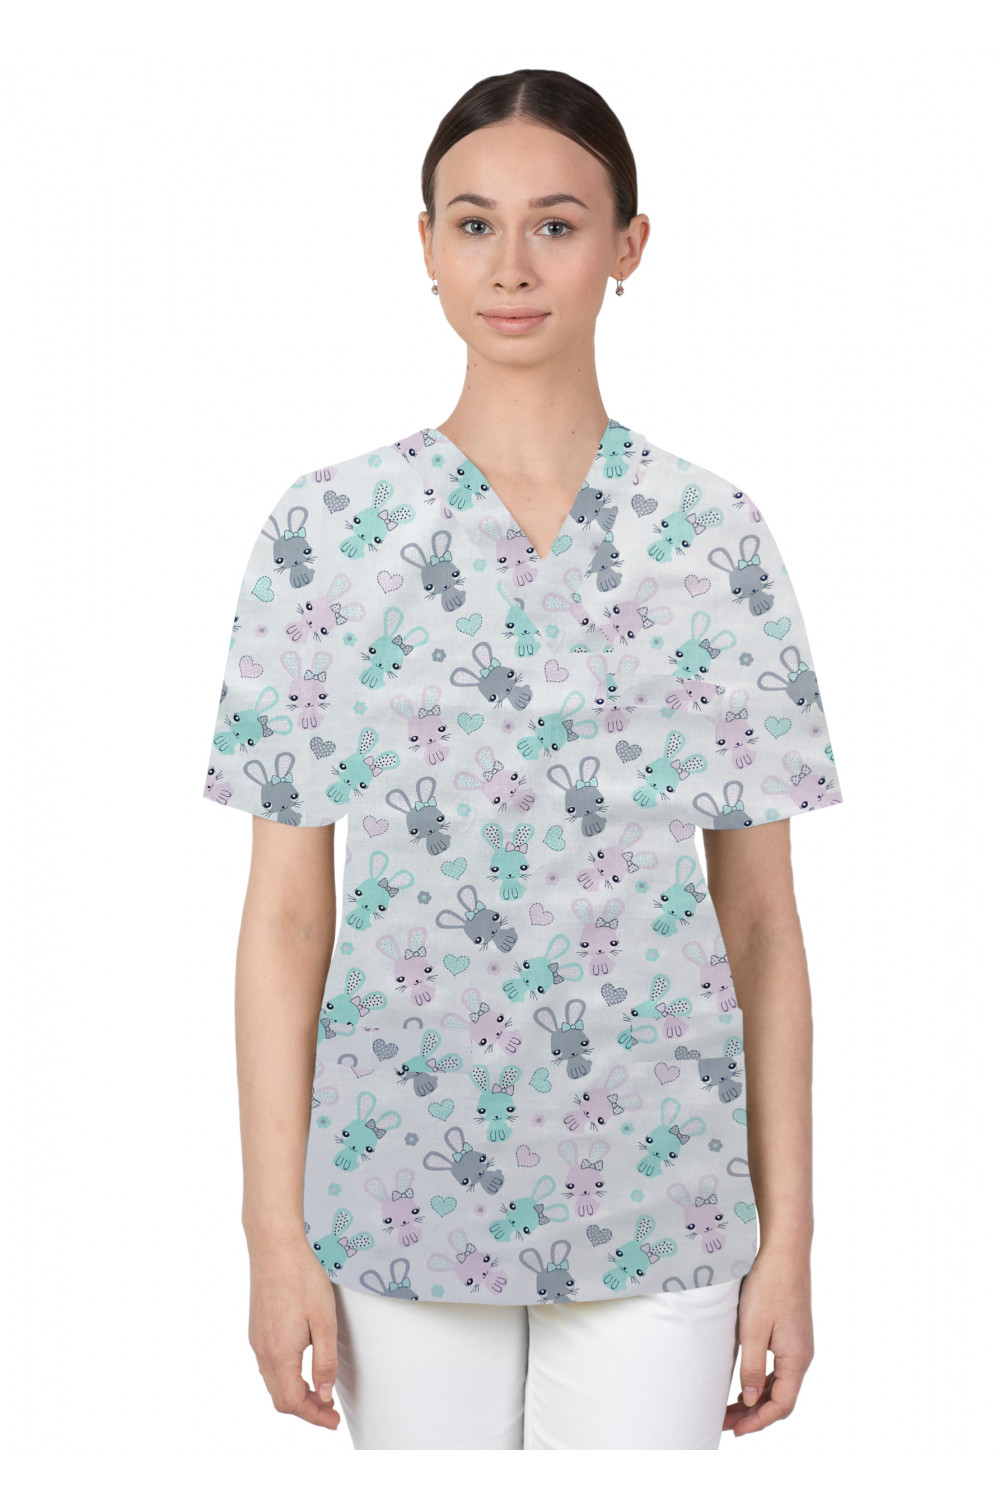 Bluza medyczna we wzorki kolorowa damska M-074G króliki różowo miętowe na szarym tle